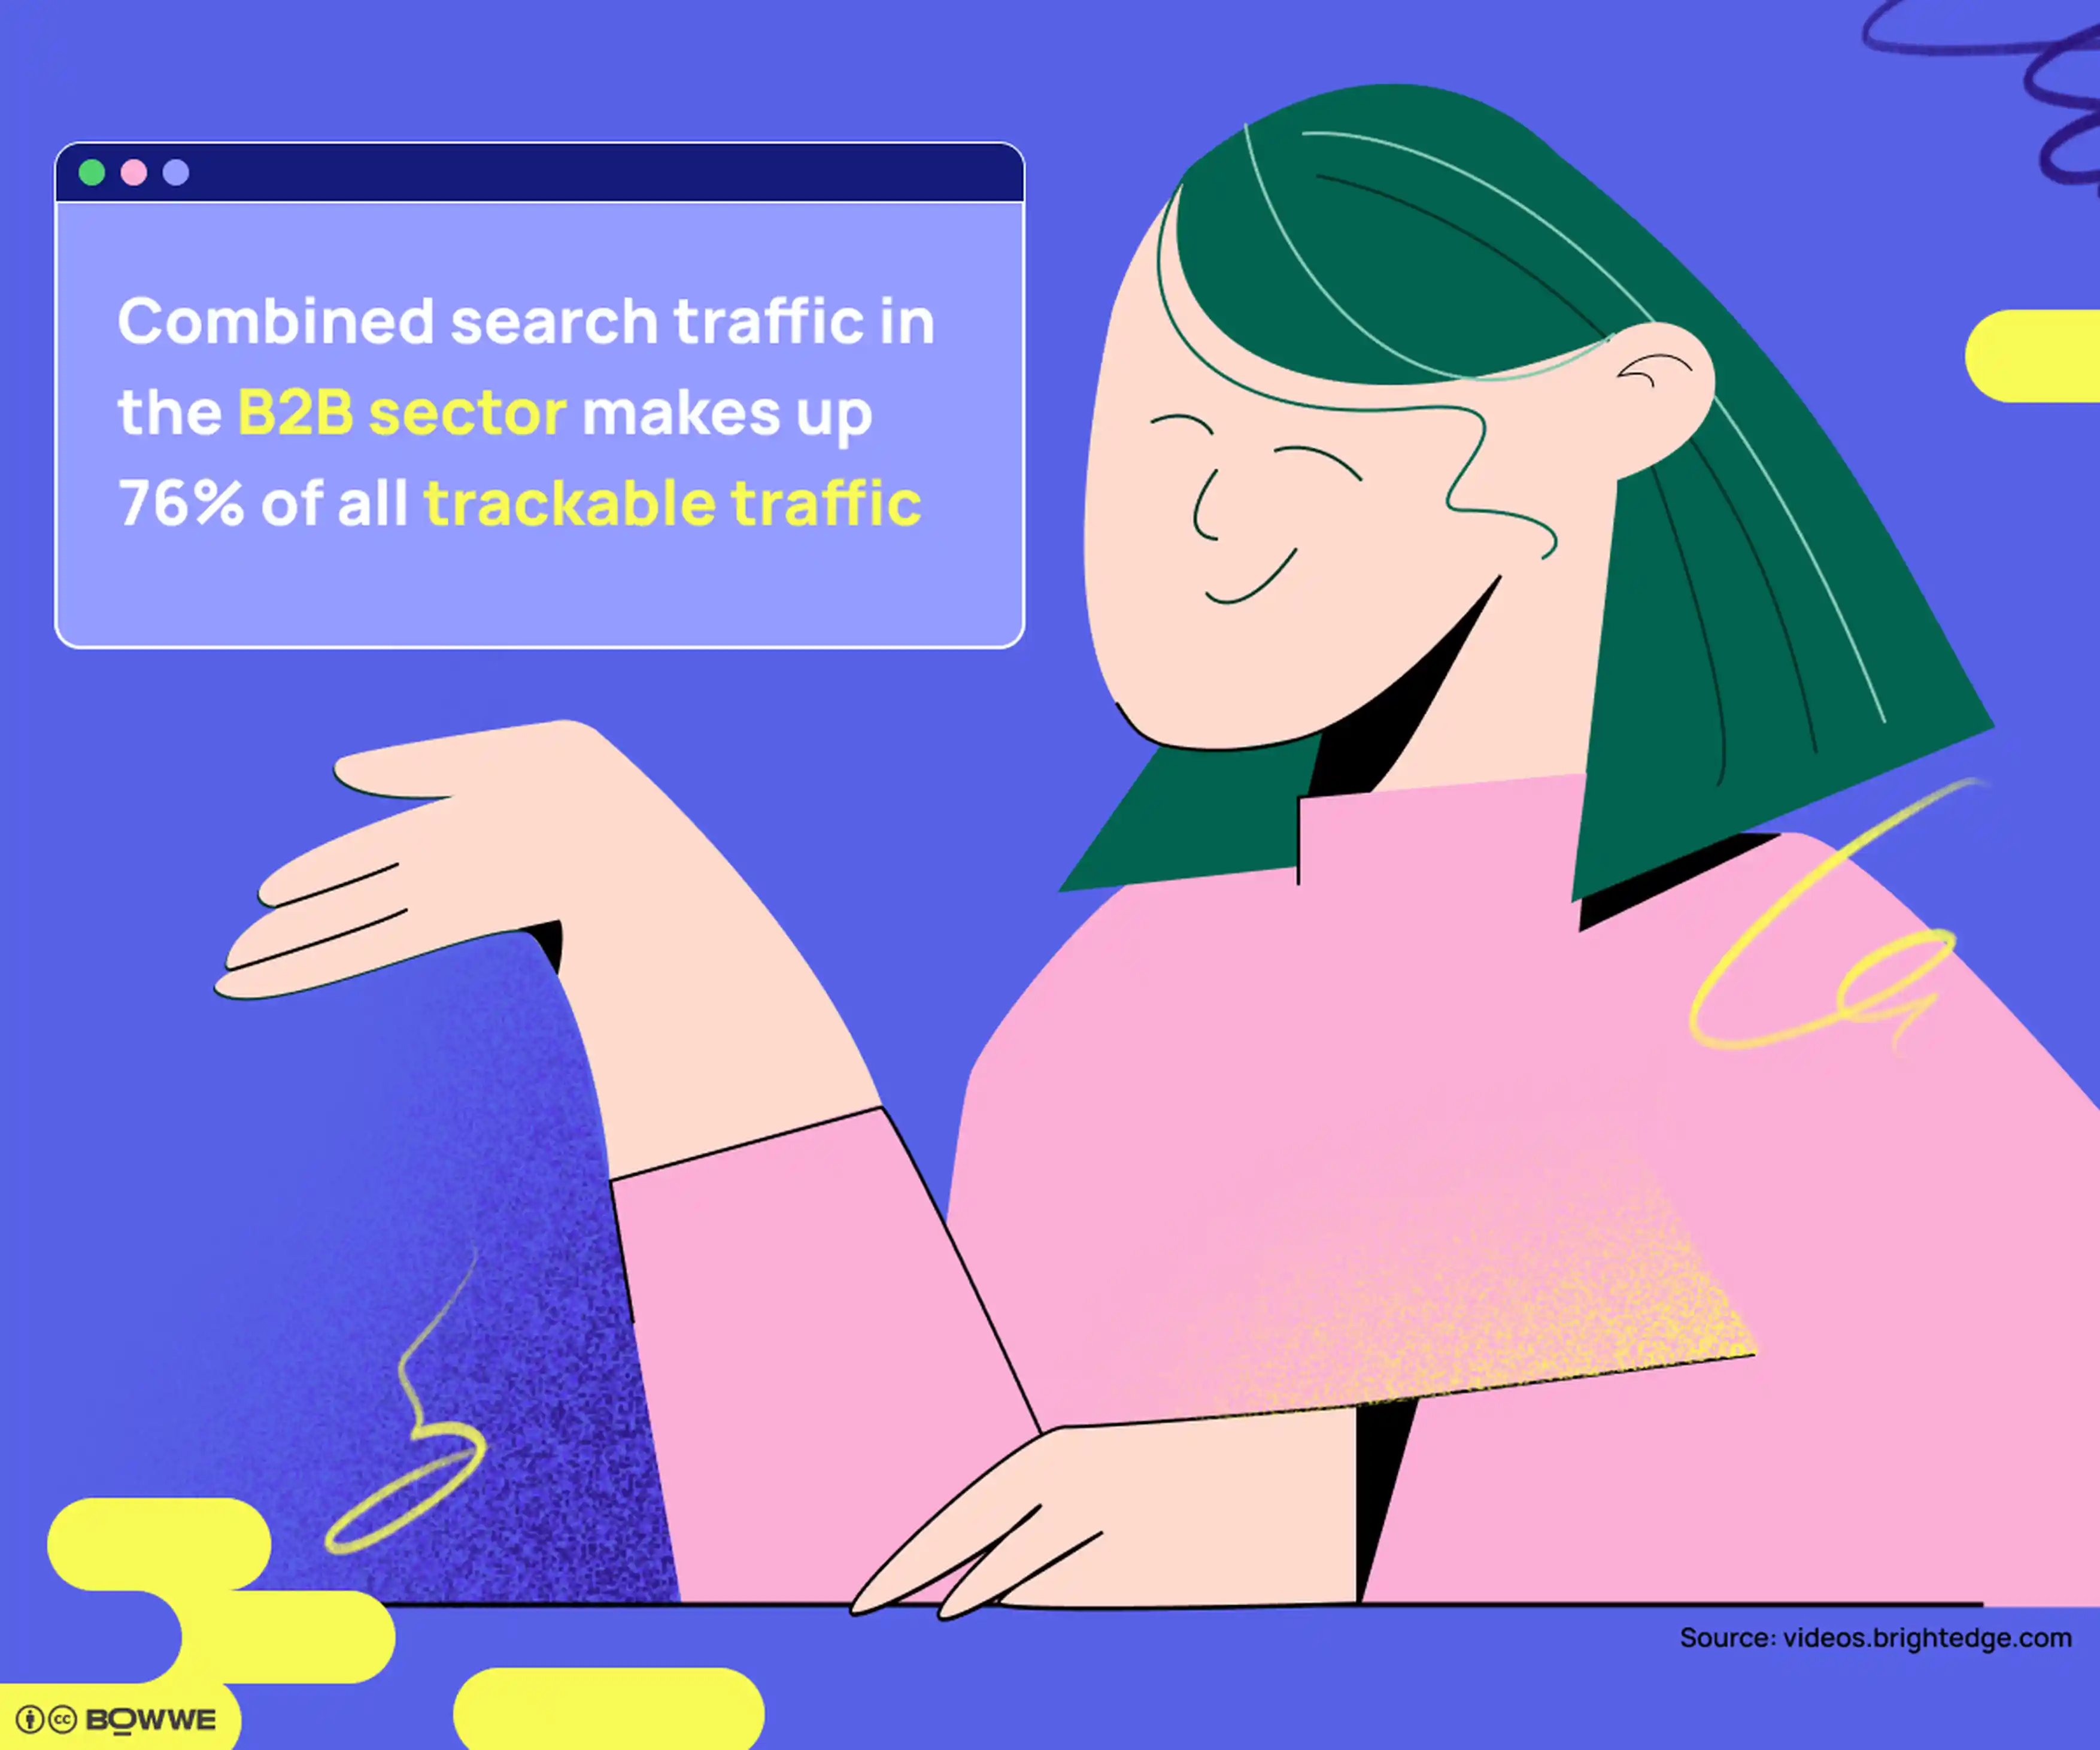 Gráficos con fondo morado en los que hay una imagen de un hombre con una flecha hacia arriba. El titular dice "El tráfico de búsqueda combinado en el sector B2B representa hasta el 76% de todo el tráfico rastreable".